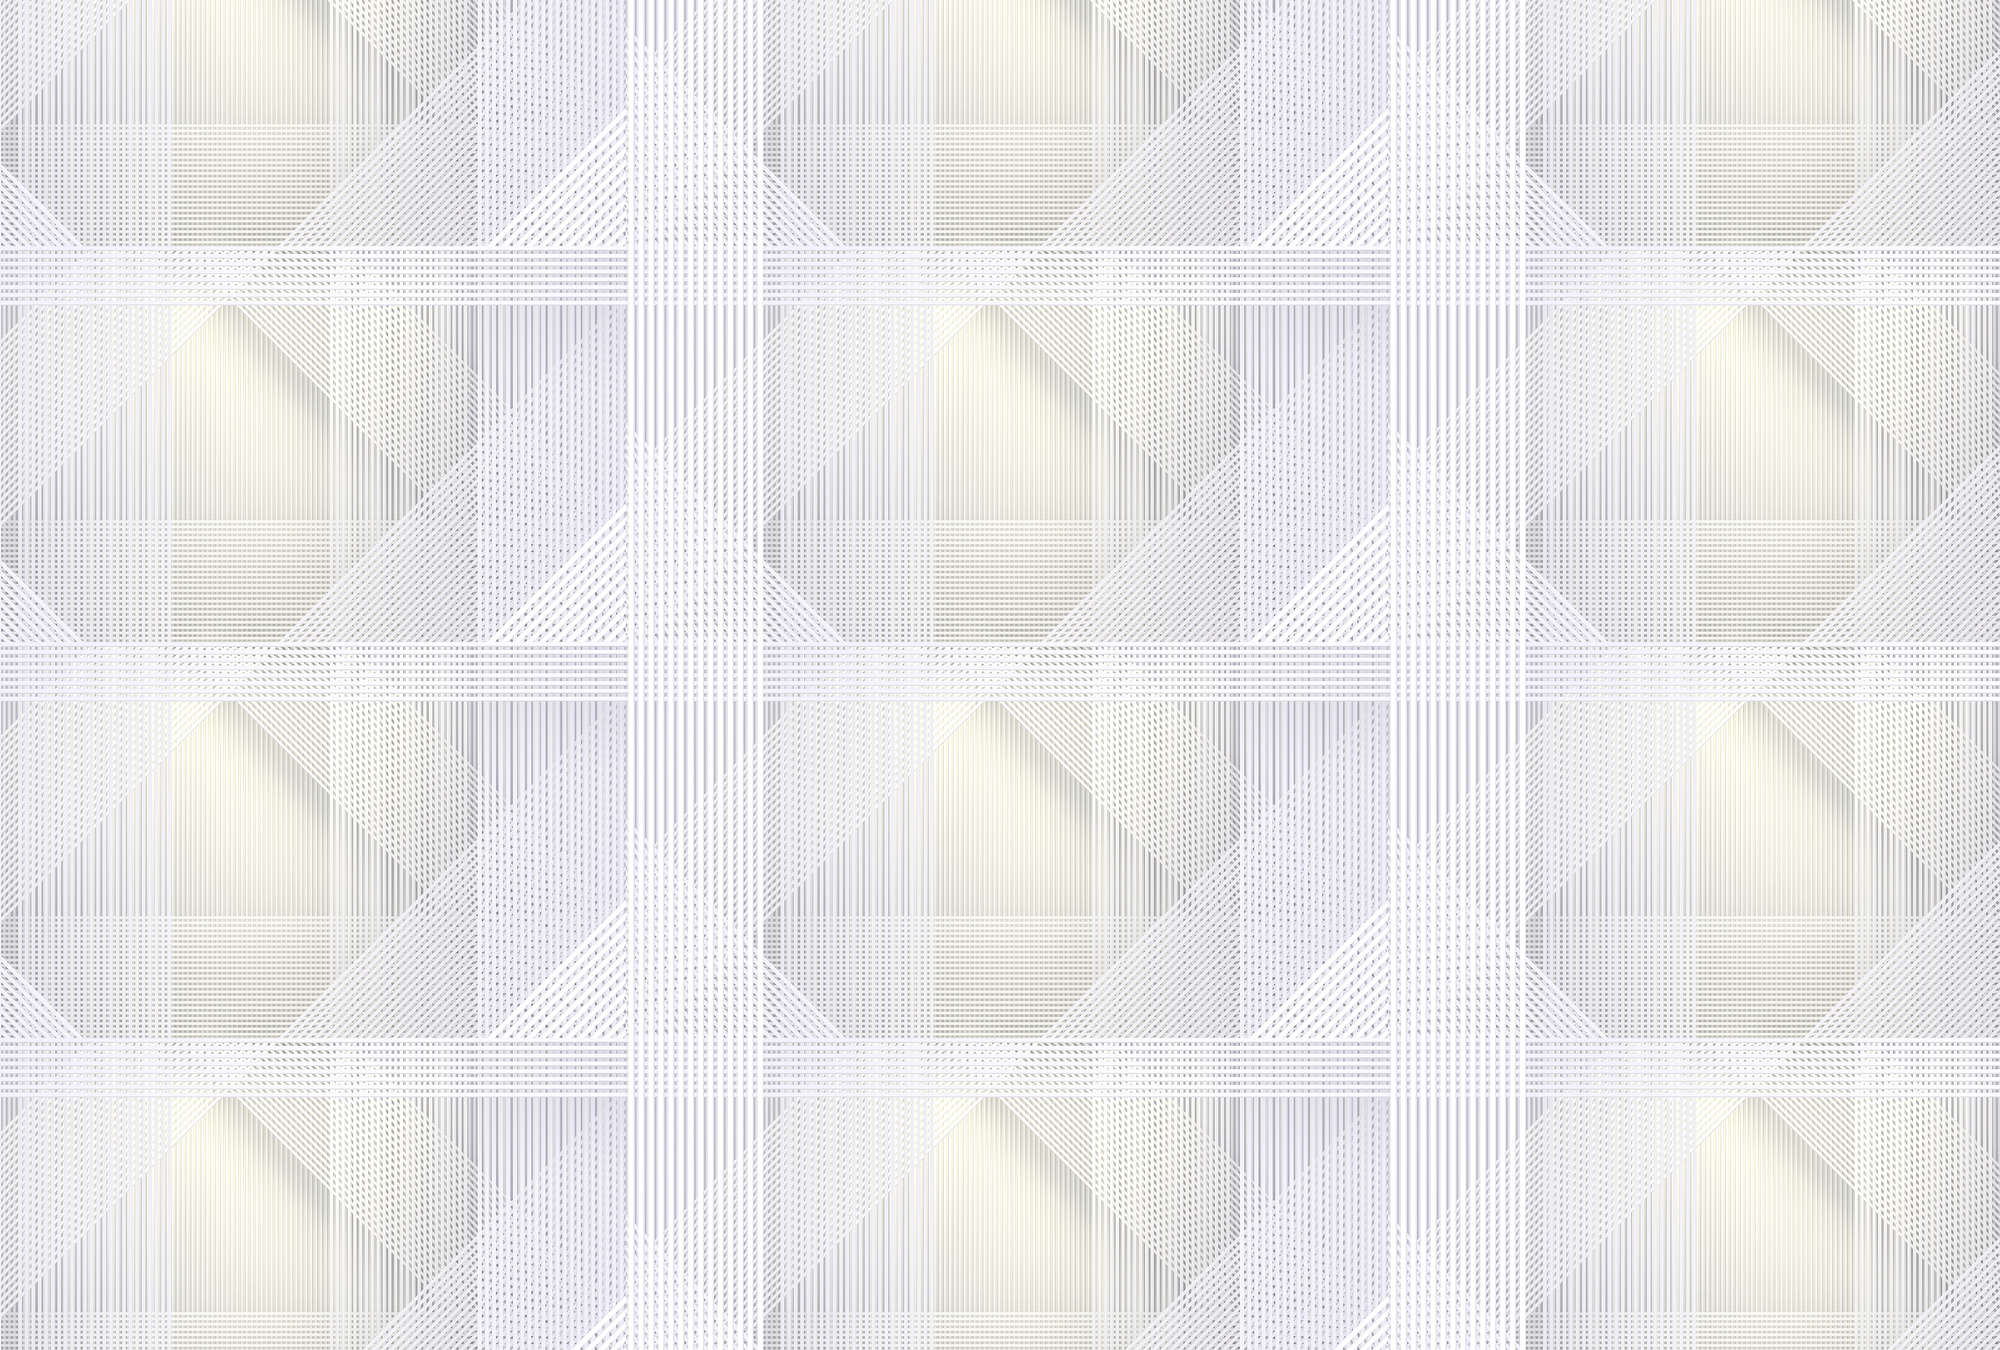             Strings 1 - Fototapete geometrisches Streifen Muster – Gelb, Grau | Mattes Glattvlies
        